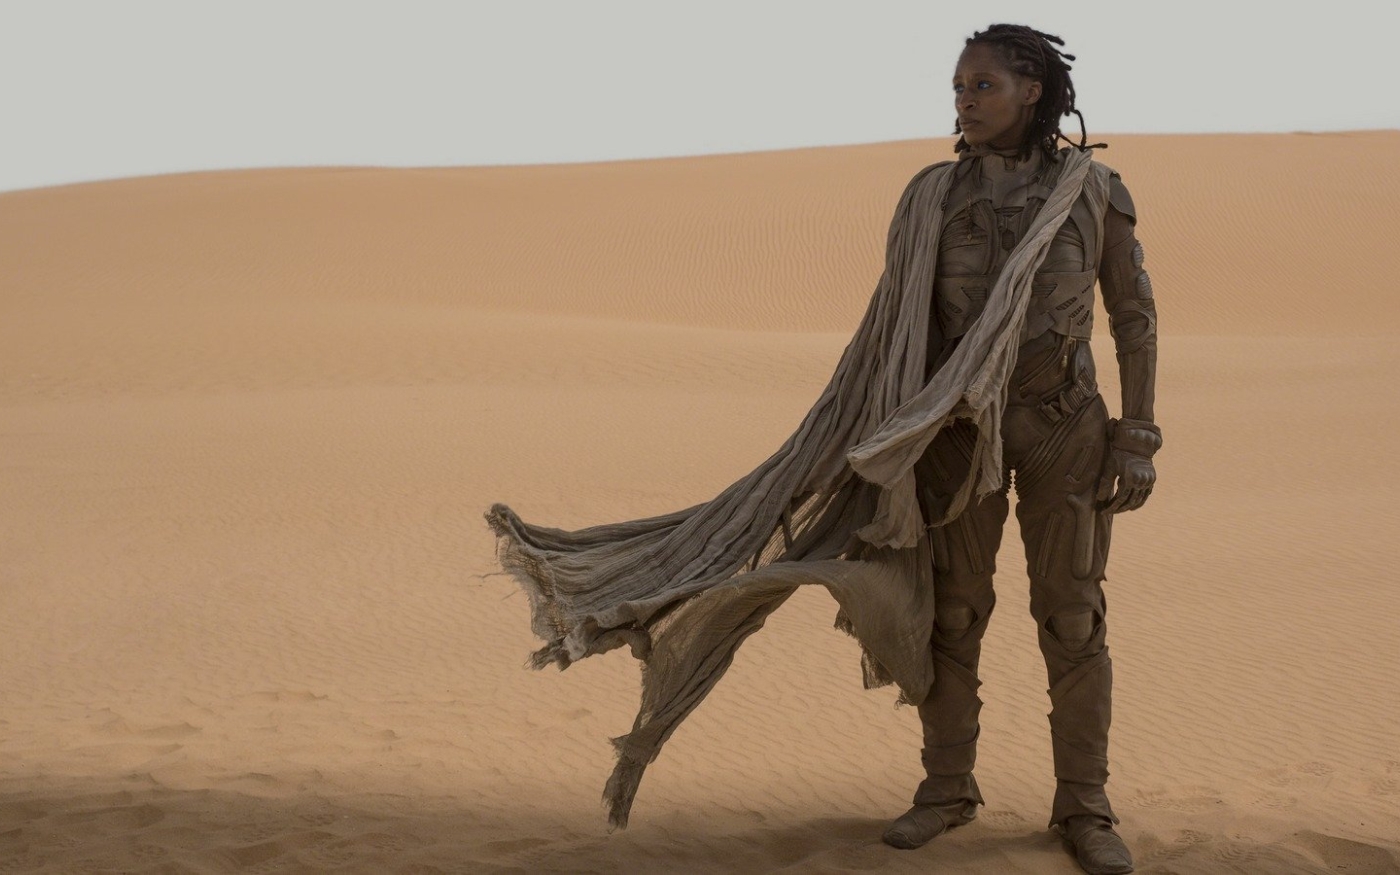 Dans Dune, Liet Kynes (Sharon Duncan-Brewster) est à la fois une émissaire des Fremen et au service de l’empereur (Legendary/Warner Bros)